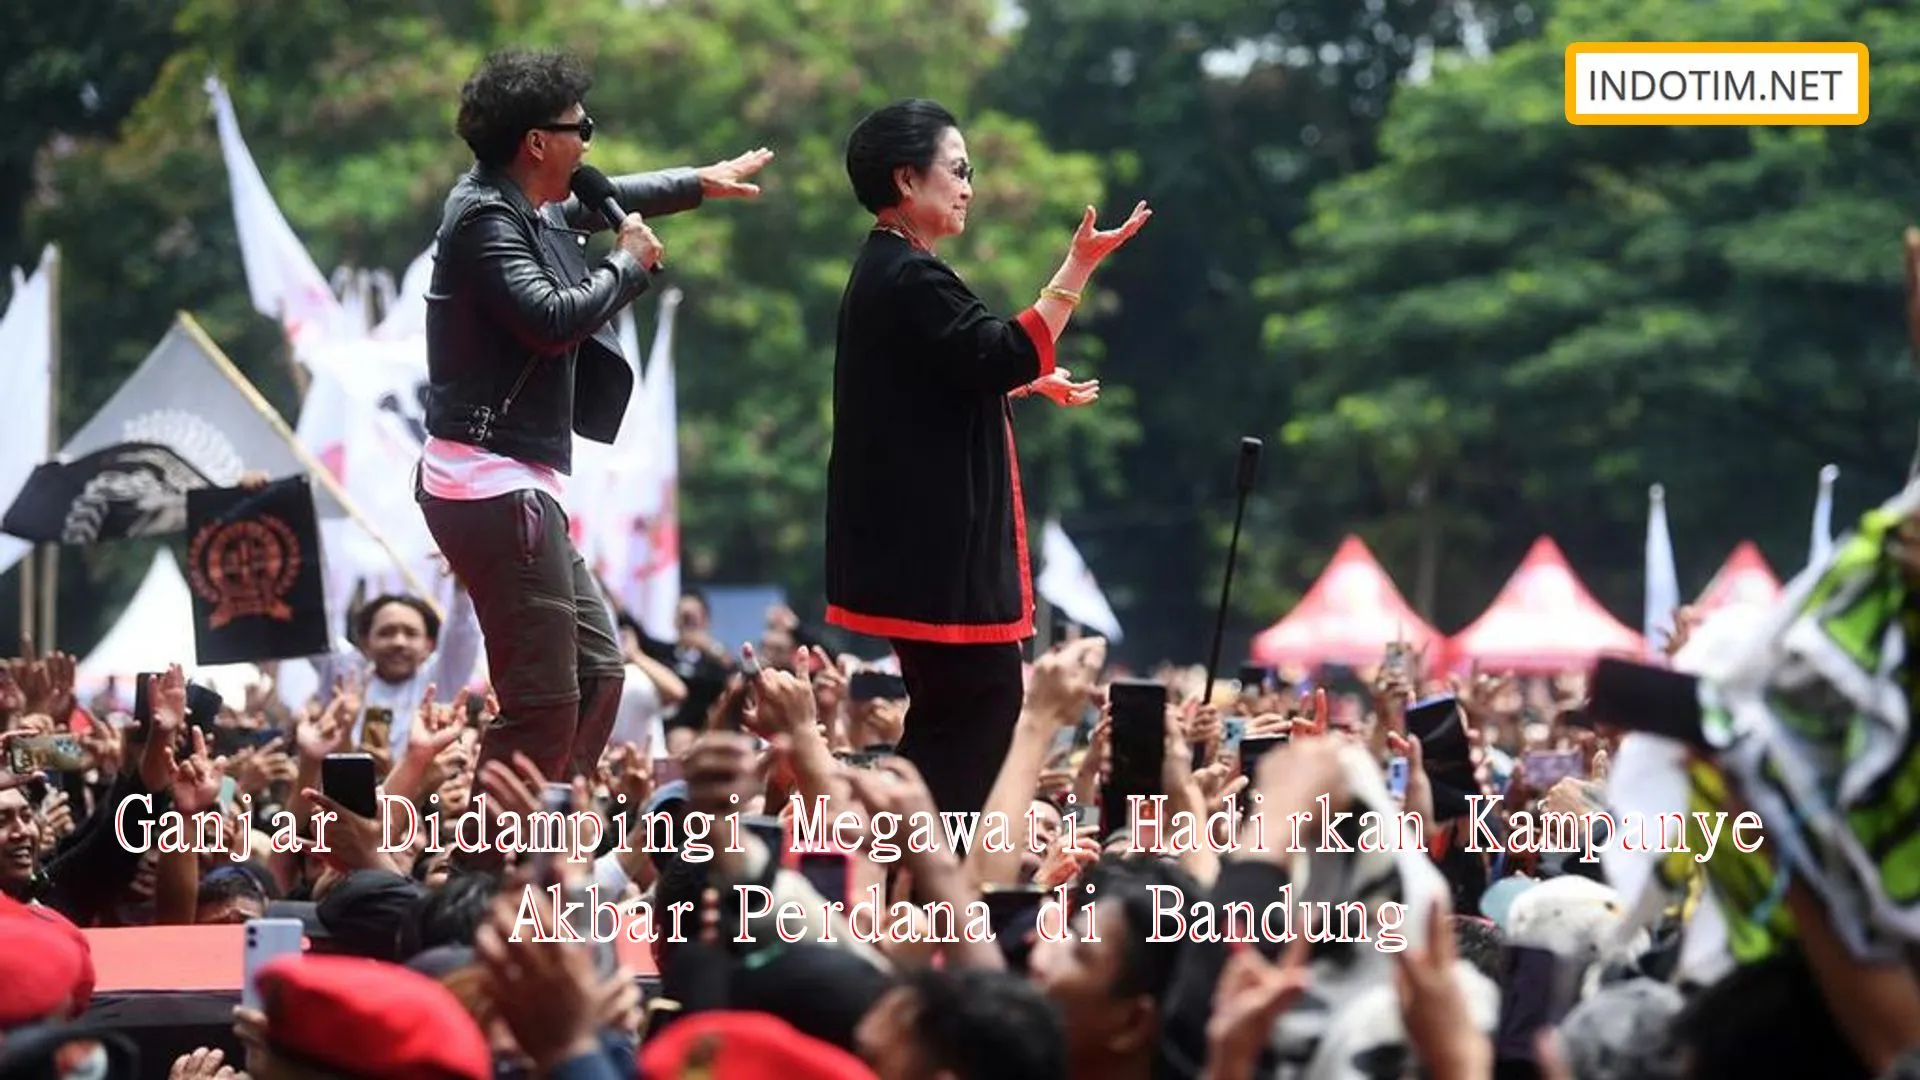 Ganjar Didampingi Megawati Hadirkan Kampanye Akbar Perdana di Bandung